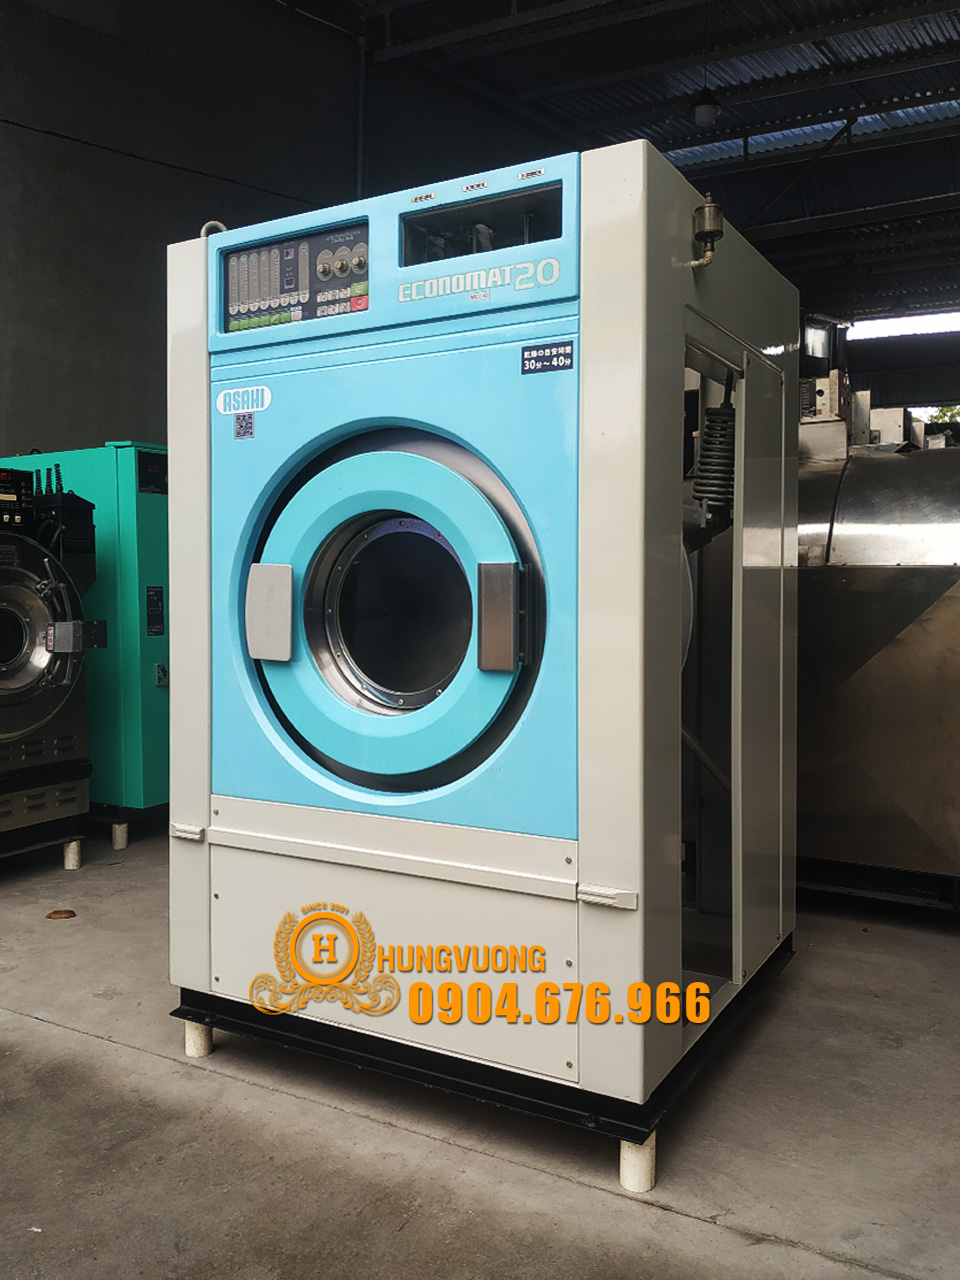 Mặt nghiêng máy giặt công nghiệp ASAHI ECONOMAT 20, 20kg, chân chống rung, biến tần, Nhật Bản